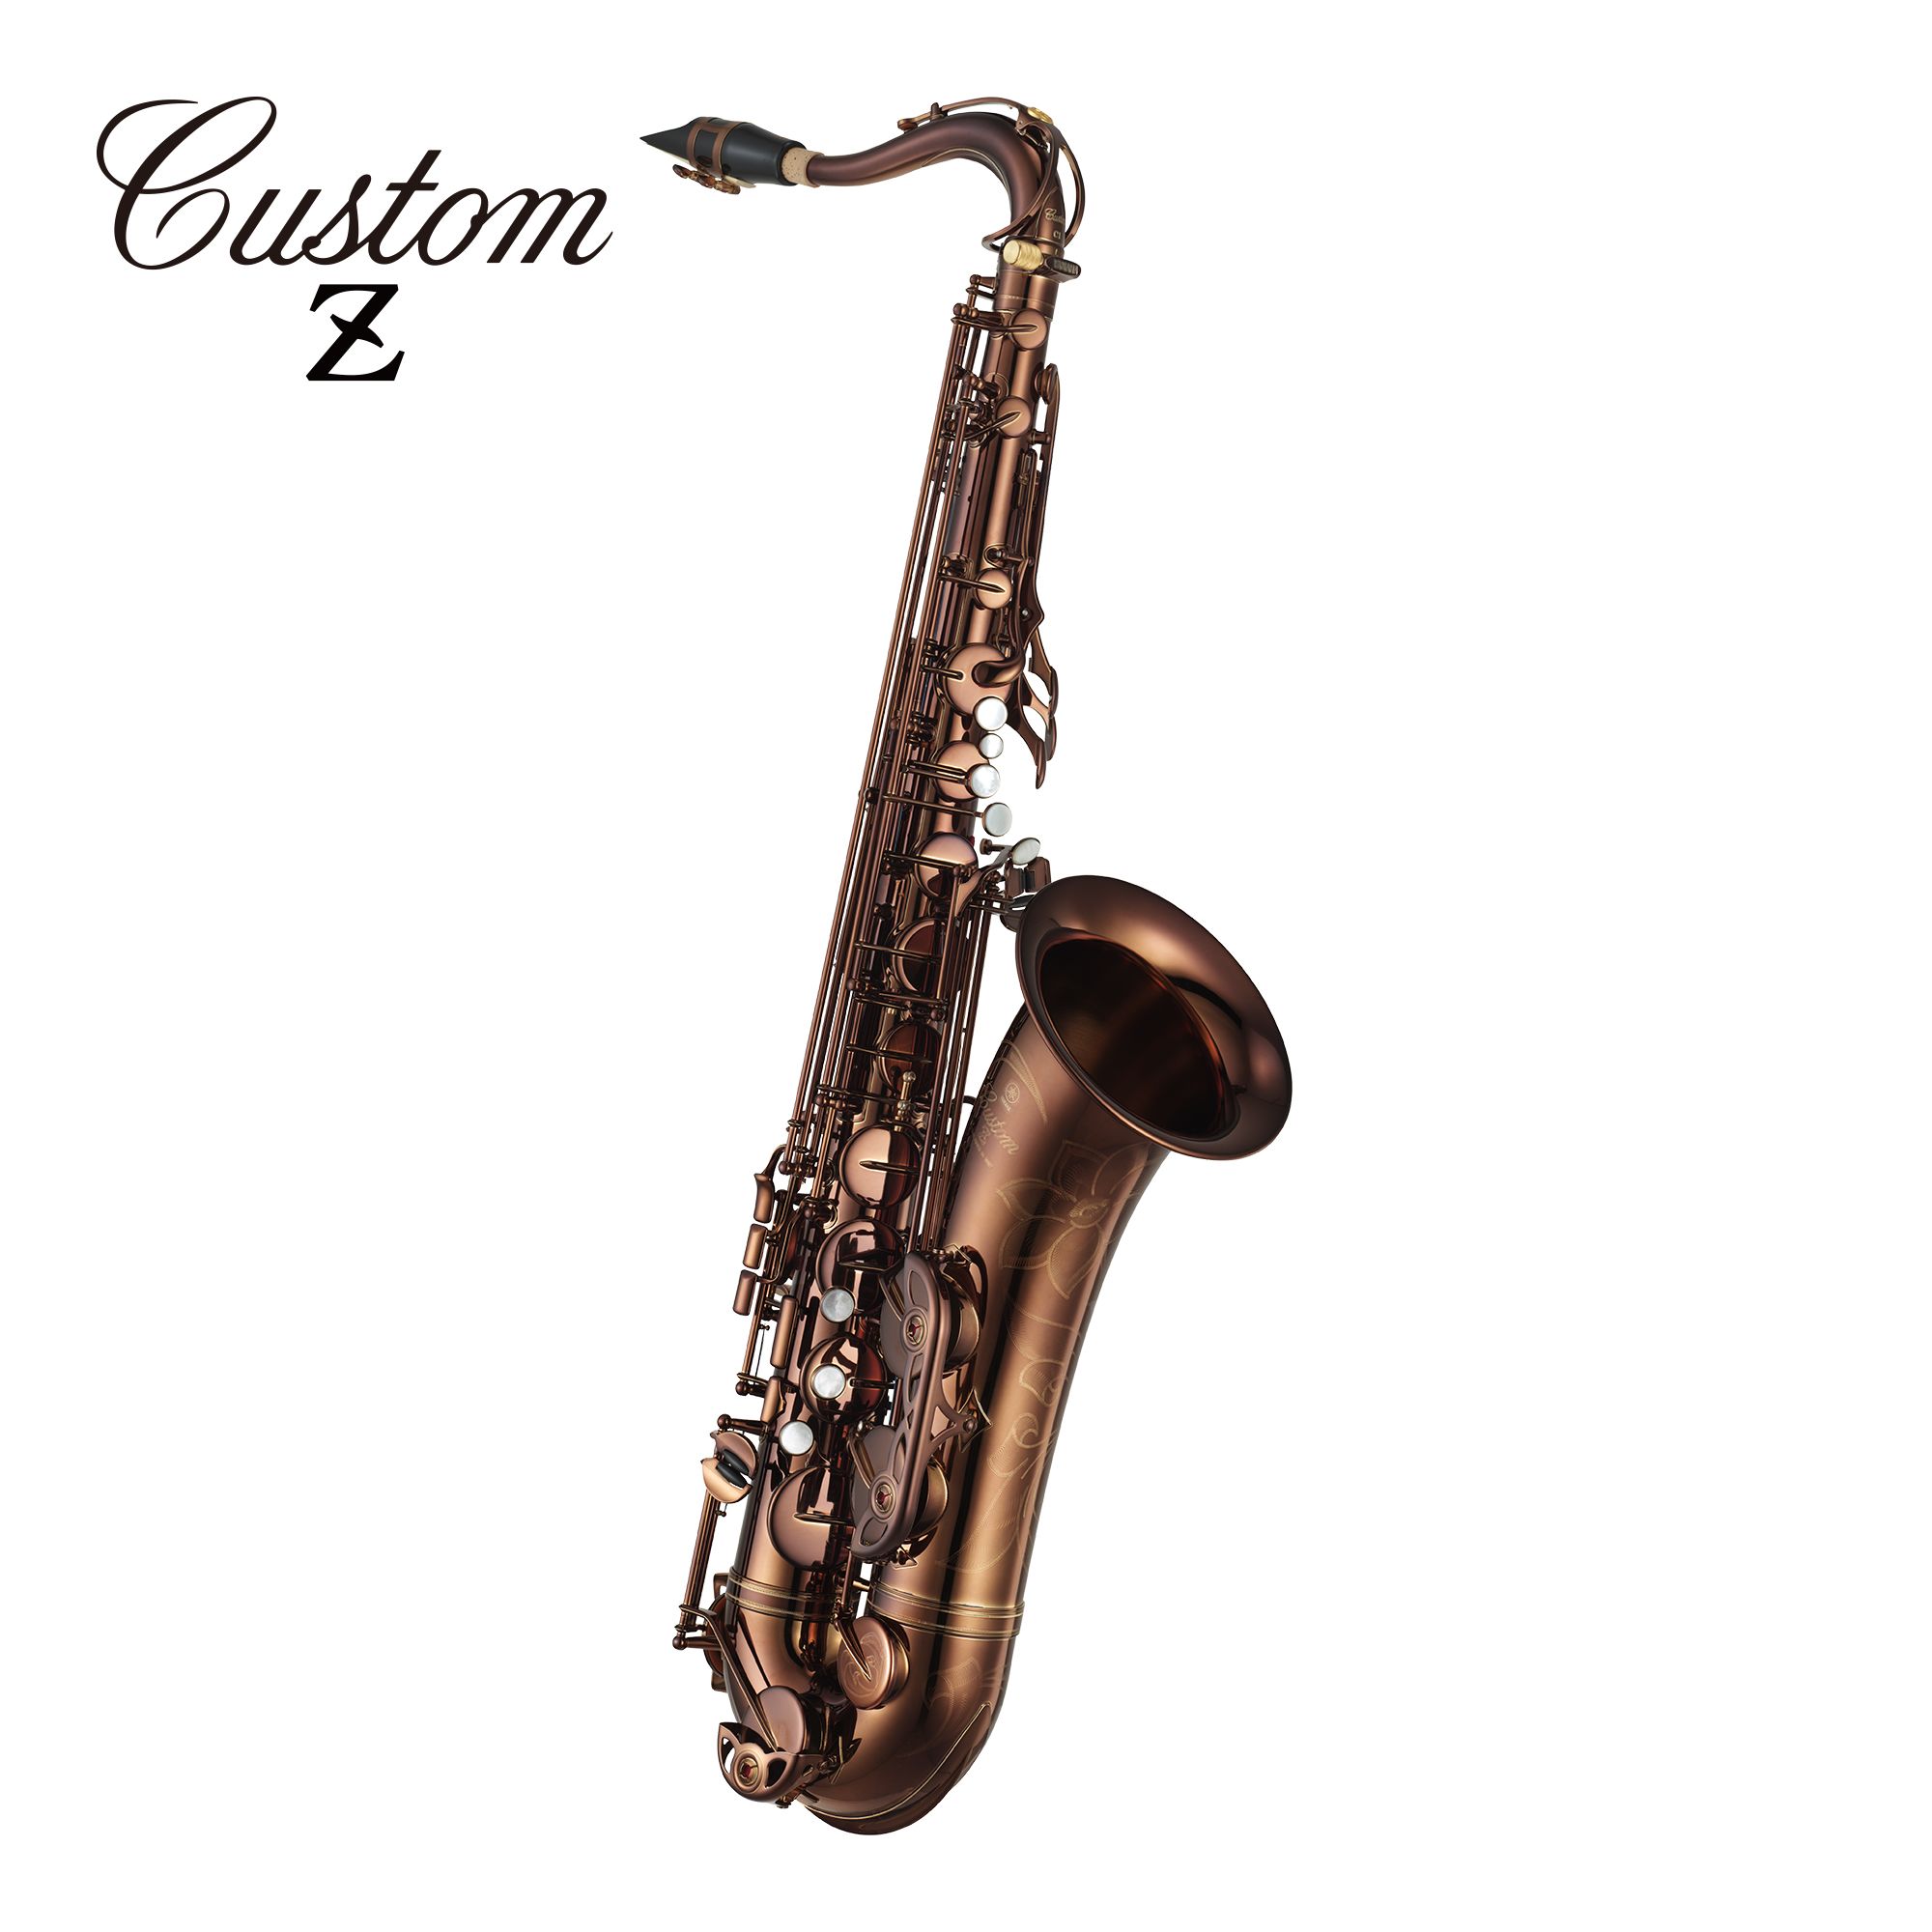 YTS-82ZASP - Overview - Saxophones - Brass & Woodwinds - Musical 